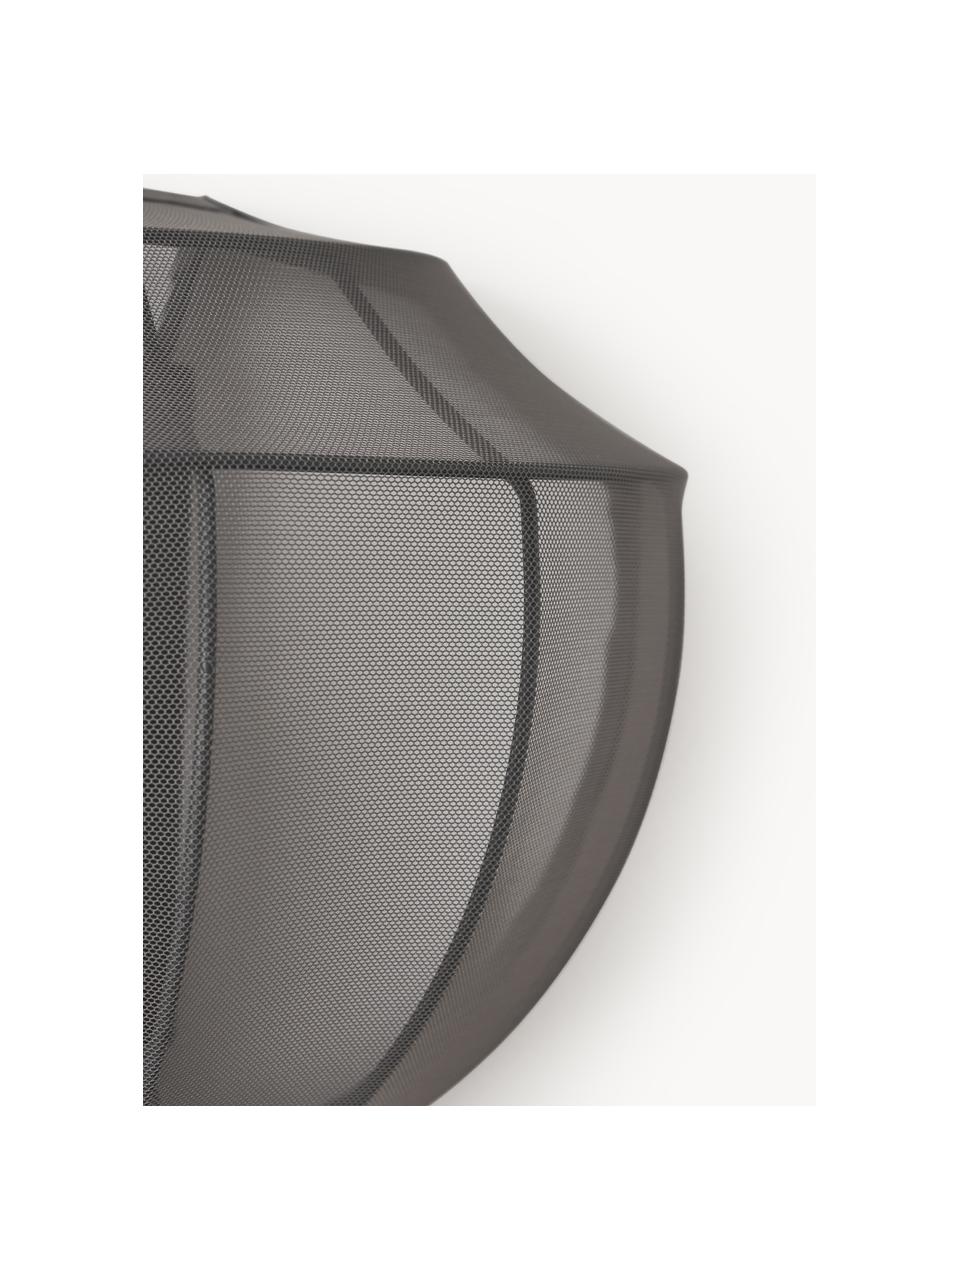 Netzstoff-Wandleuchte Beau mit Stecker, Lampenschirm: Textil, Baldachin: Metall, pulverbeschichtet, Grau, B 30 x H 22 cm